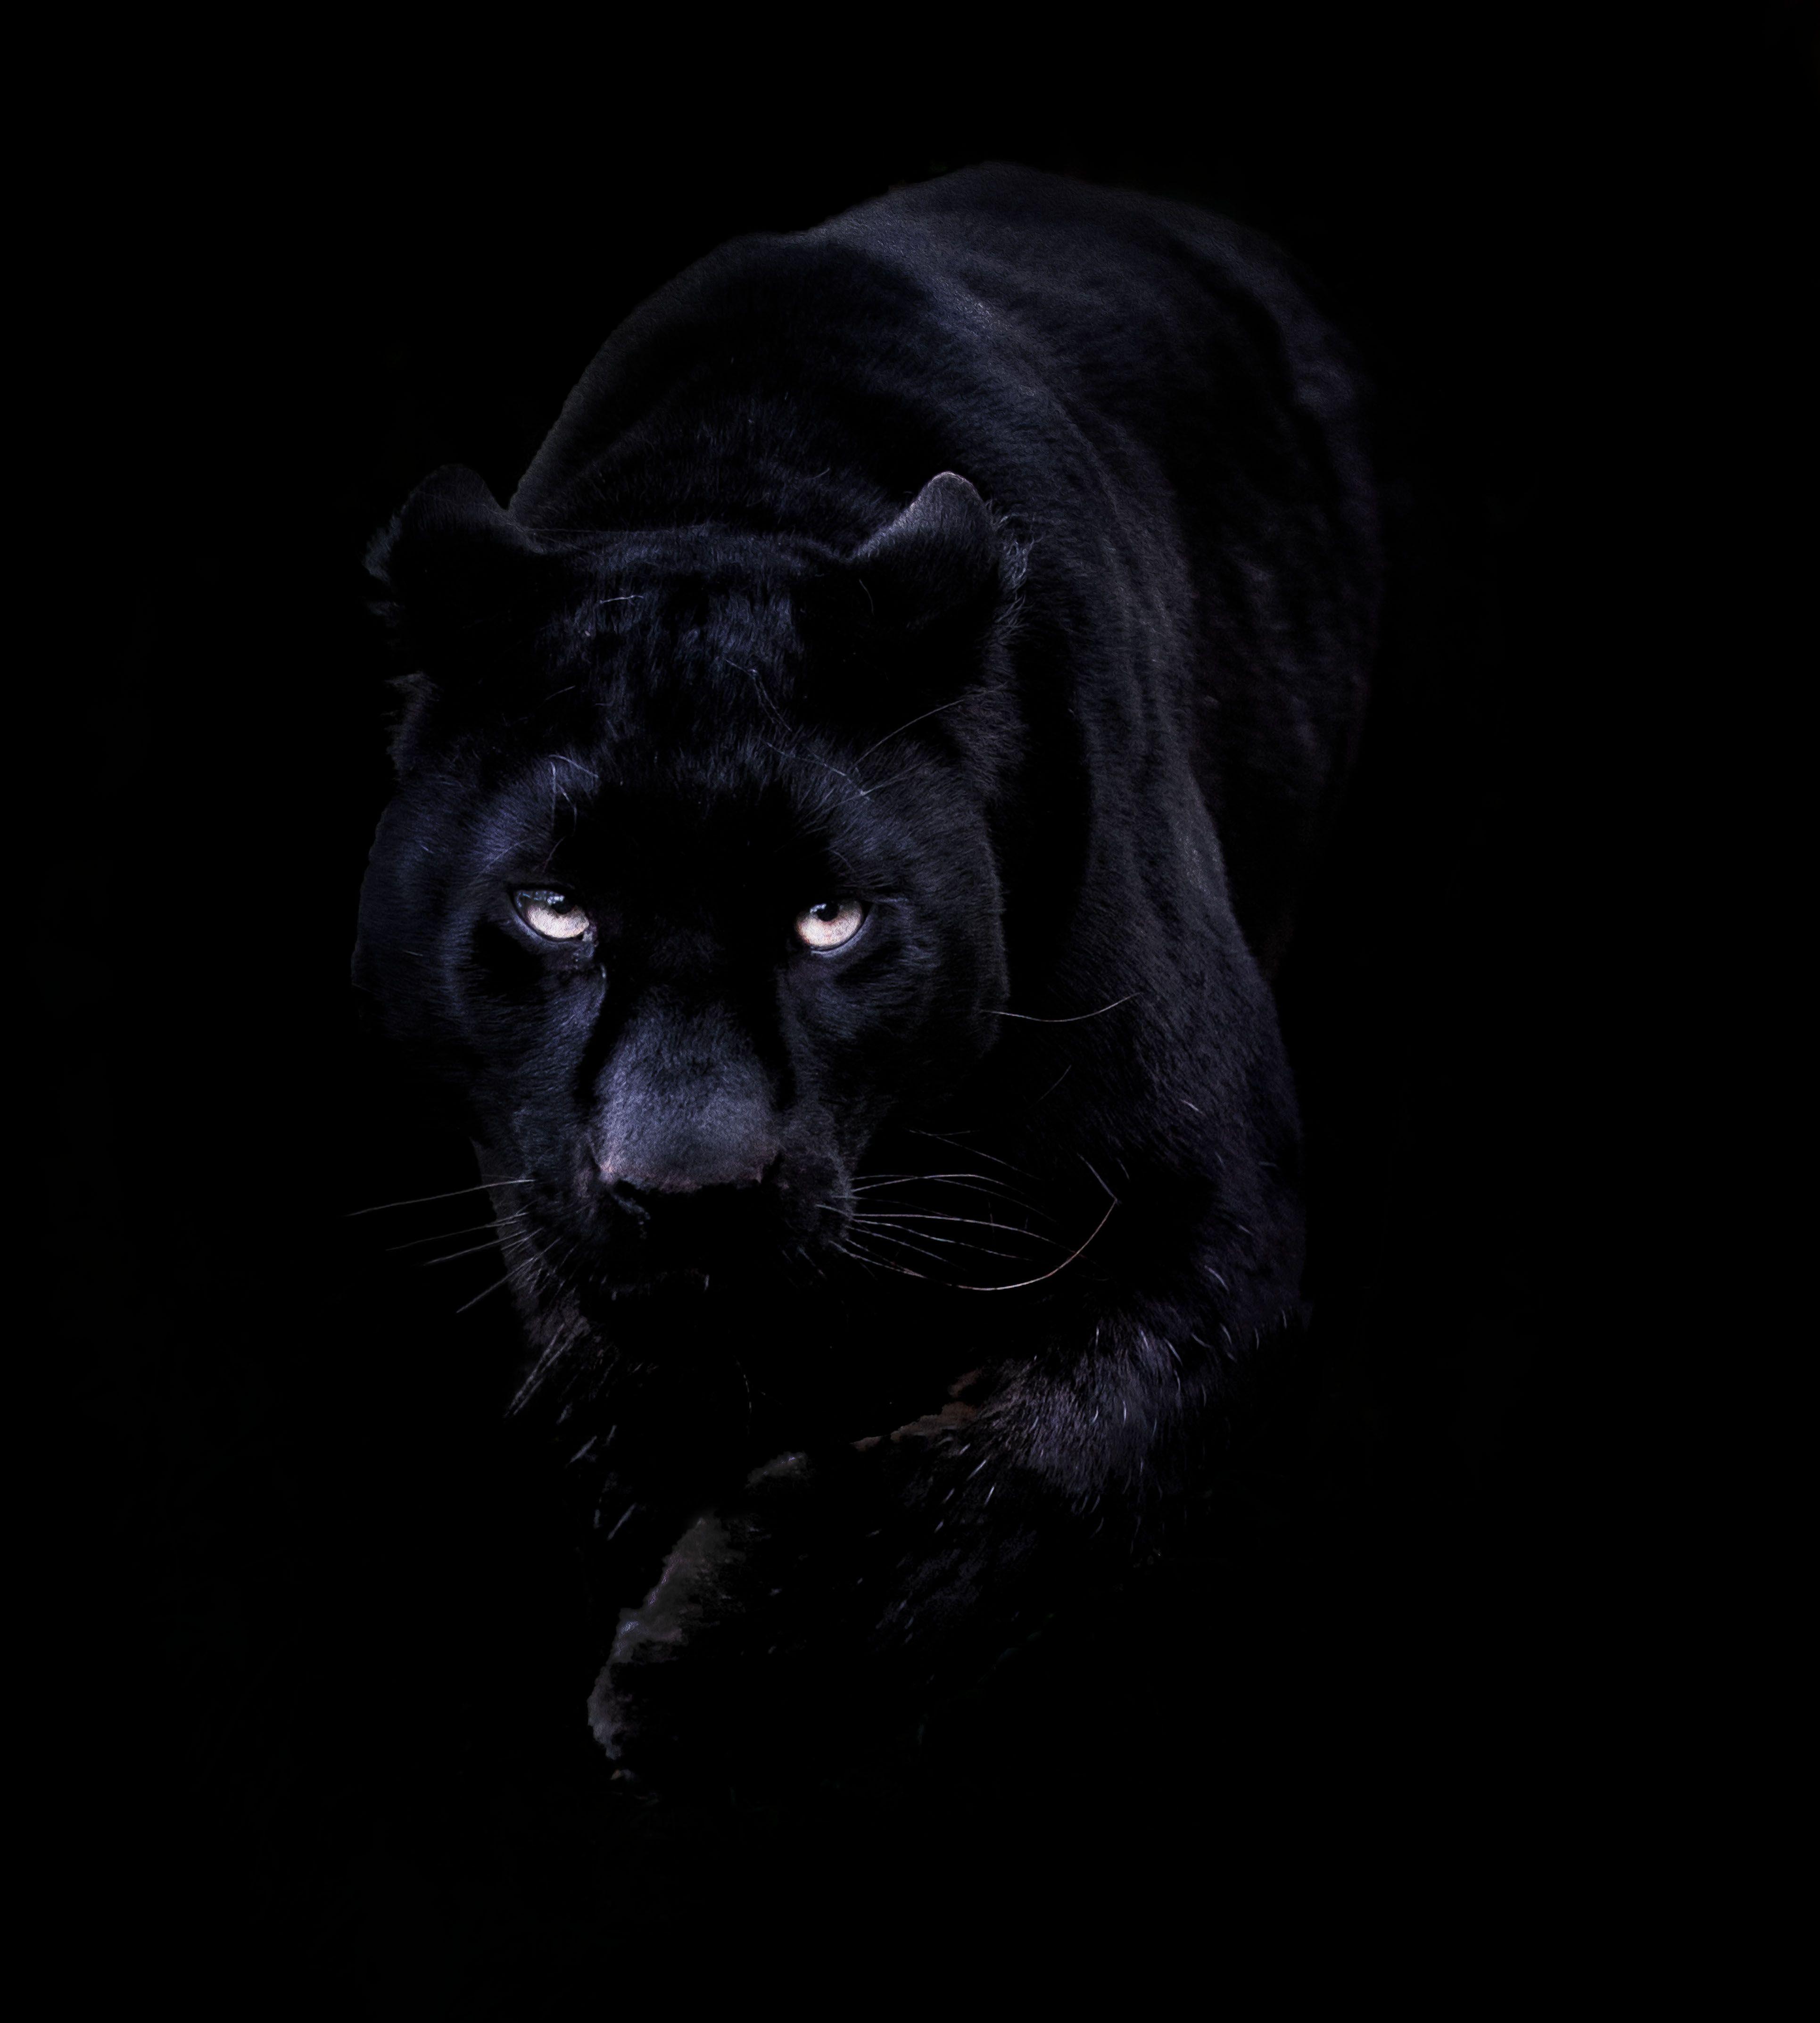 Cheetah đen là một trong những hoạt động động vật được yêu thích nhất. Với bức ảnh liên quan đến từ khóa này, hãy thỏa sức cho những tín đồ động vật hoang dã của bạn bằng cách xuất hiện chú báo đen cuốn hút trong hình nền của thiết bị.